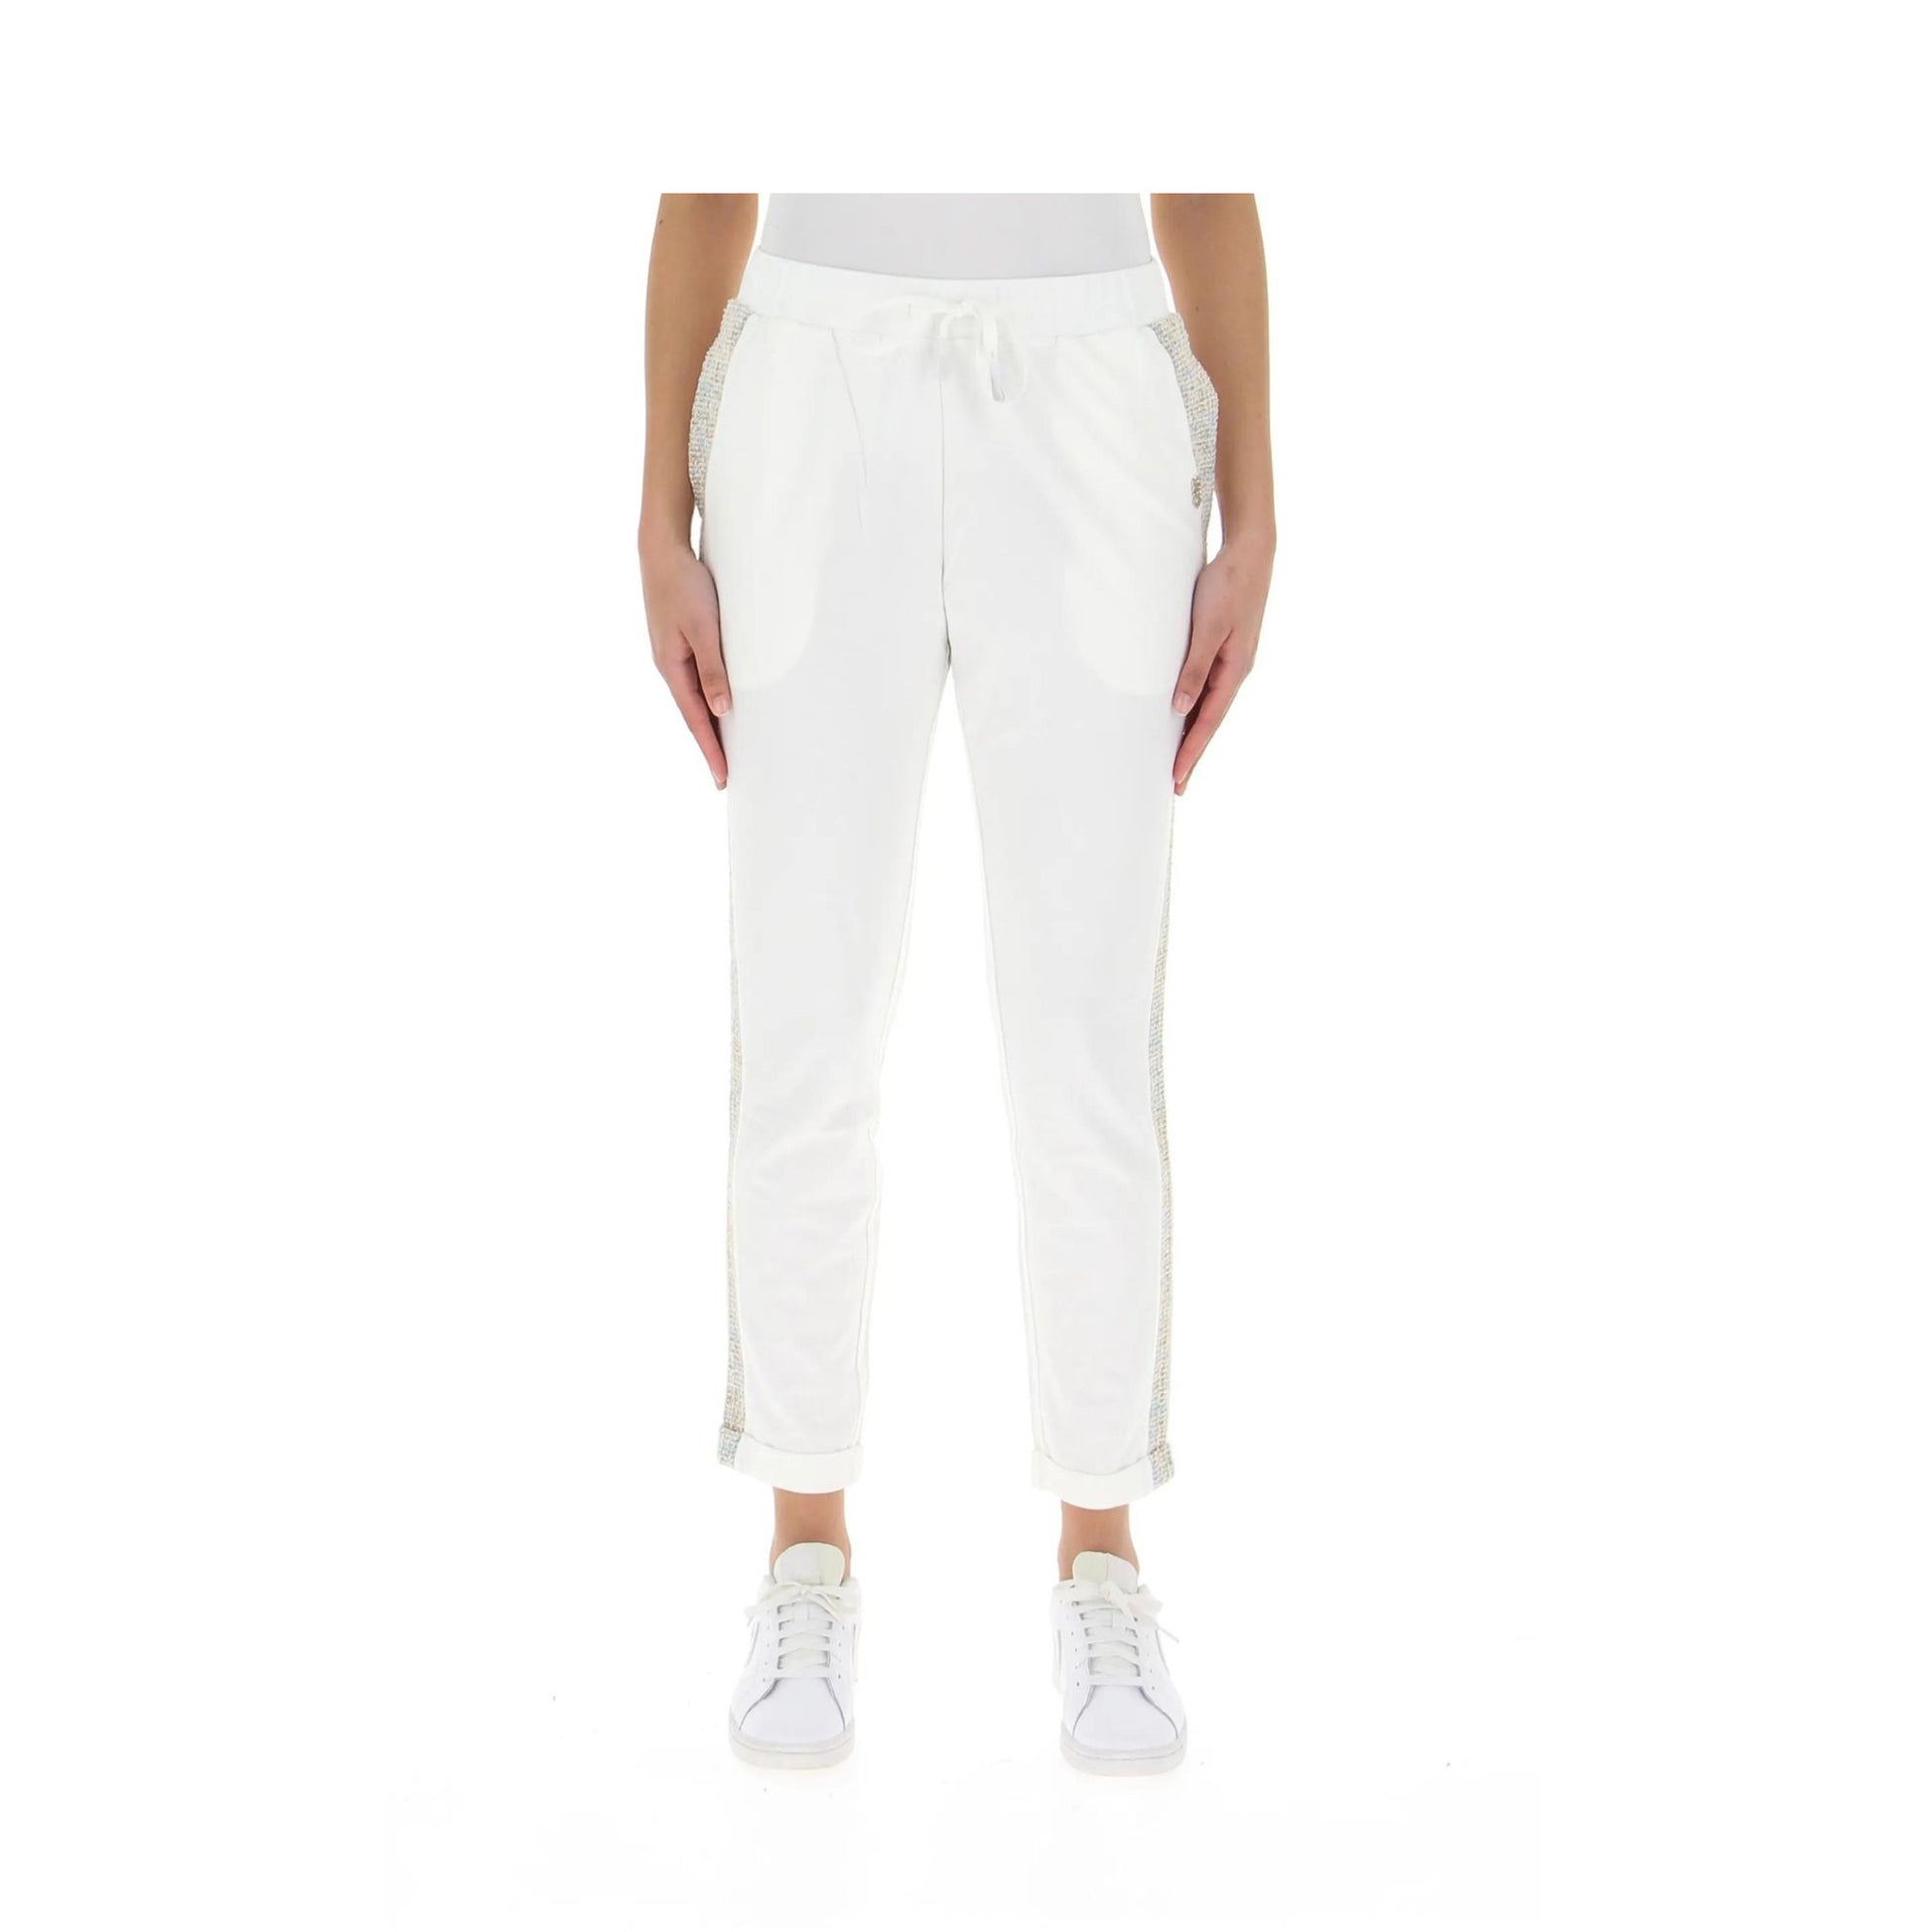 Pantalone in felpa con bande laterali in contrasto e risvolto sul fondo colore Bianco